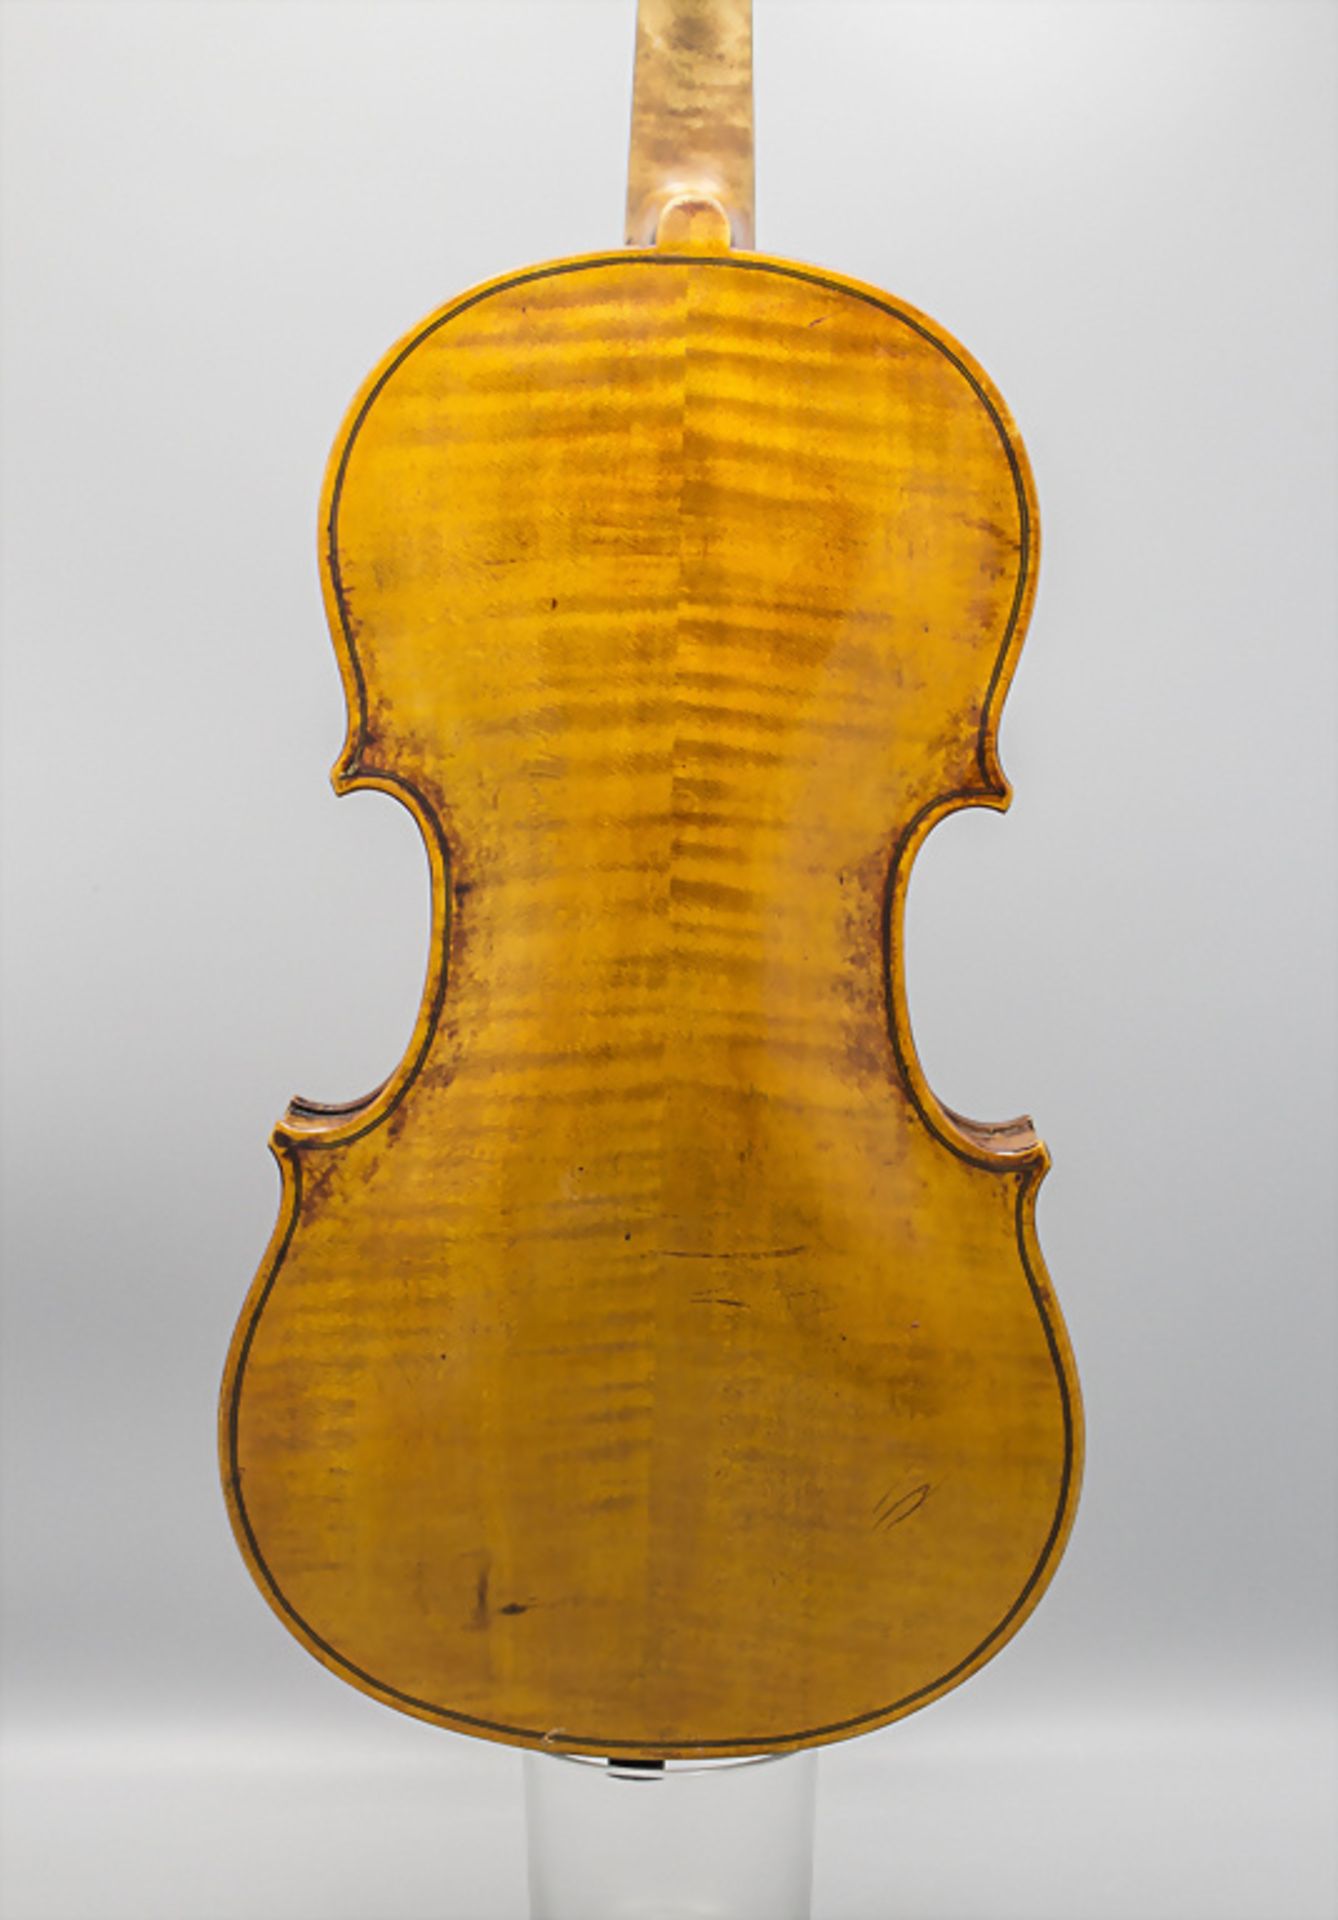 Violine / A violin, August Wunderlich, Markneukirchen, um 1900 - Bild 2 aus 9